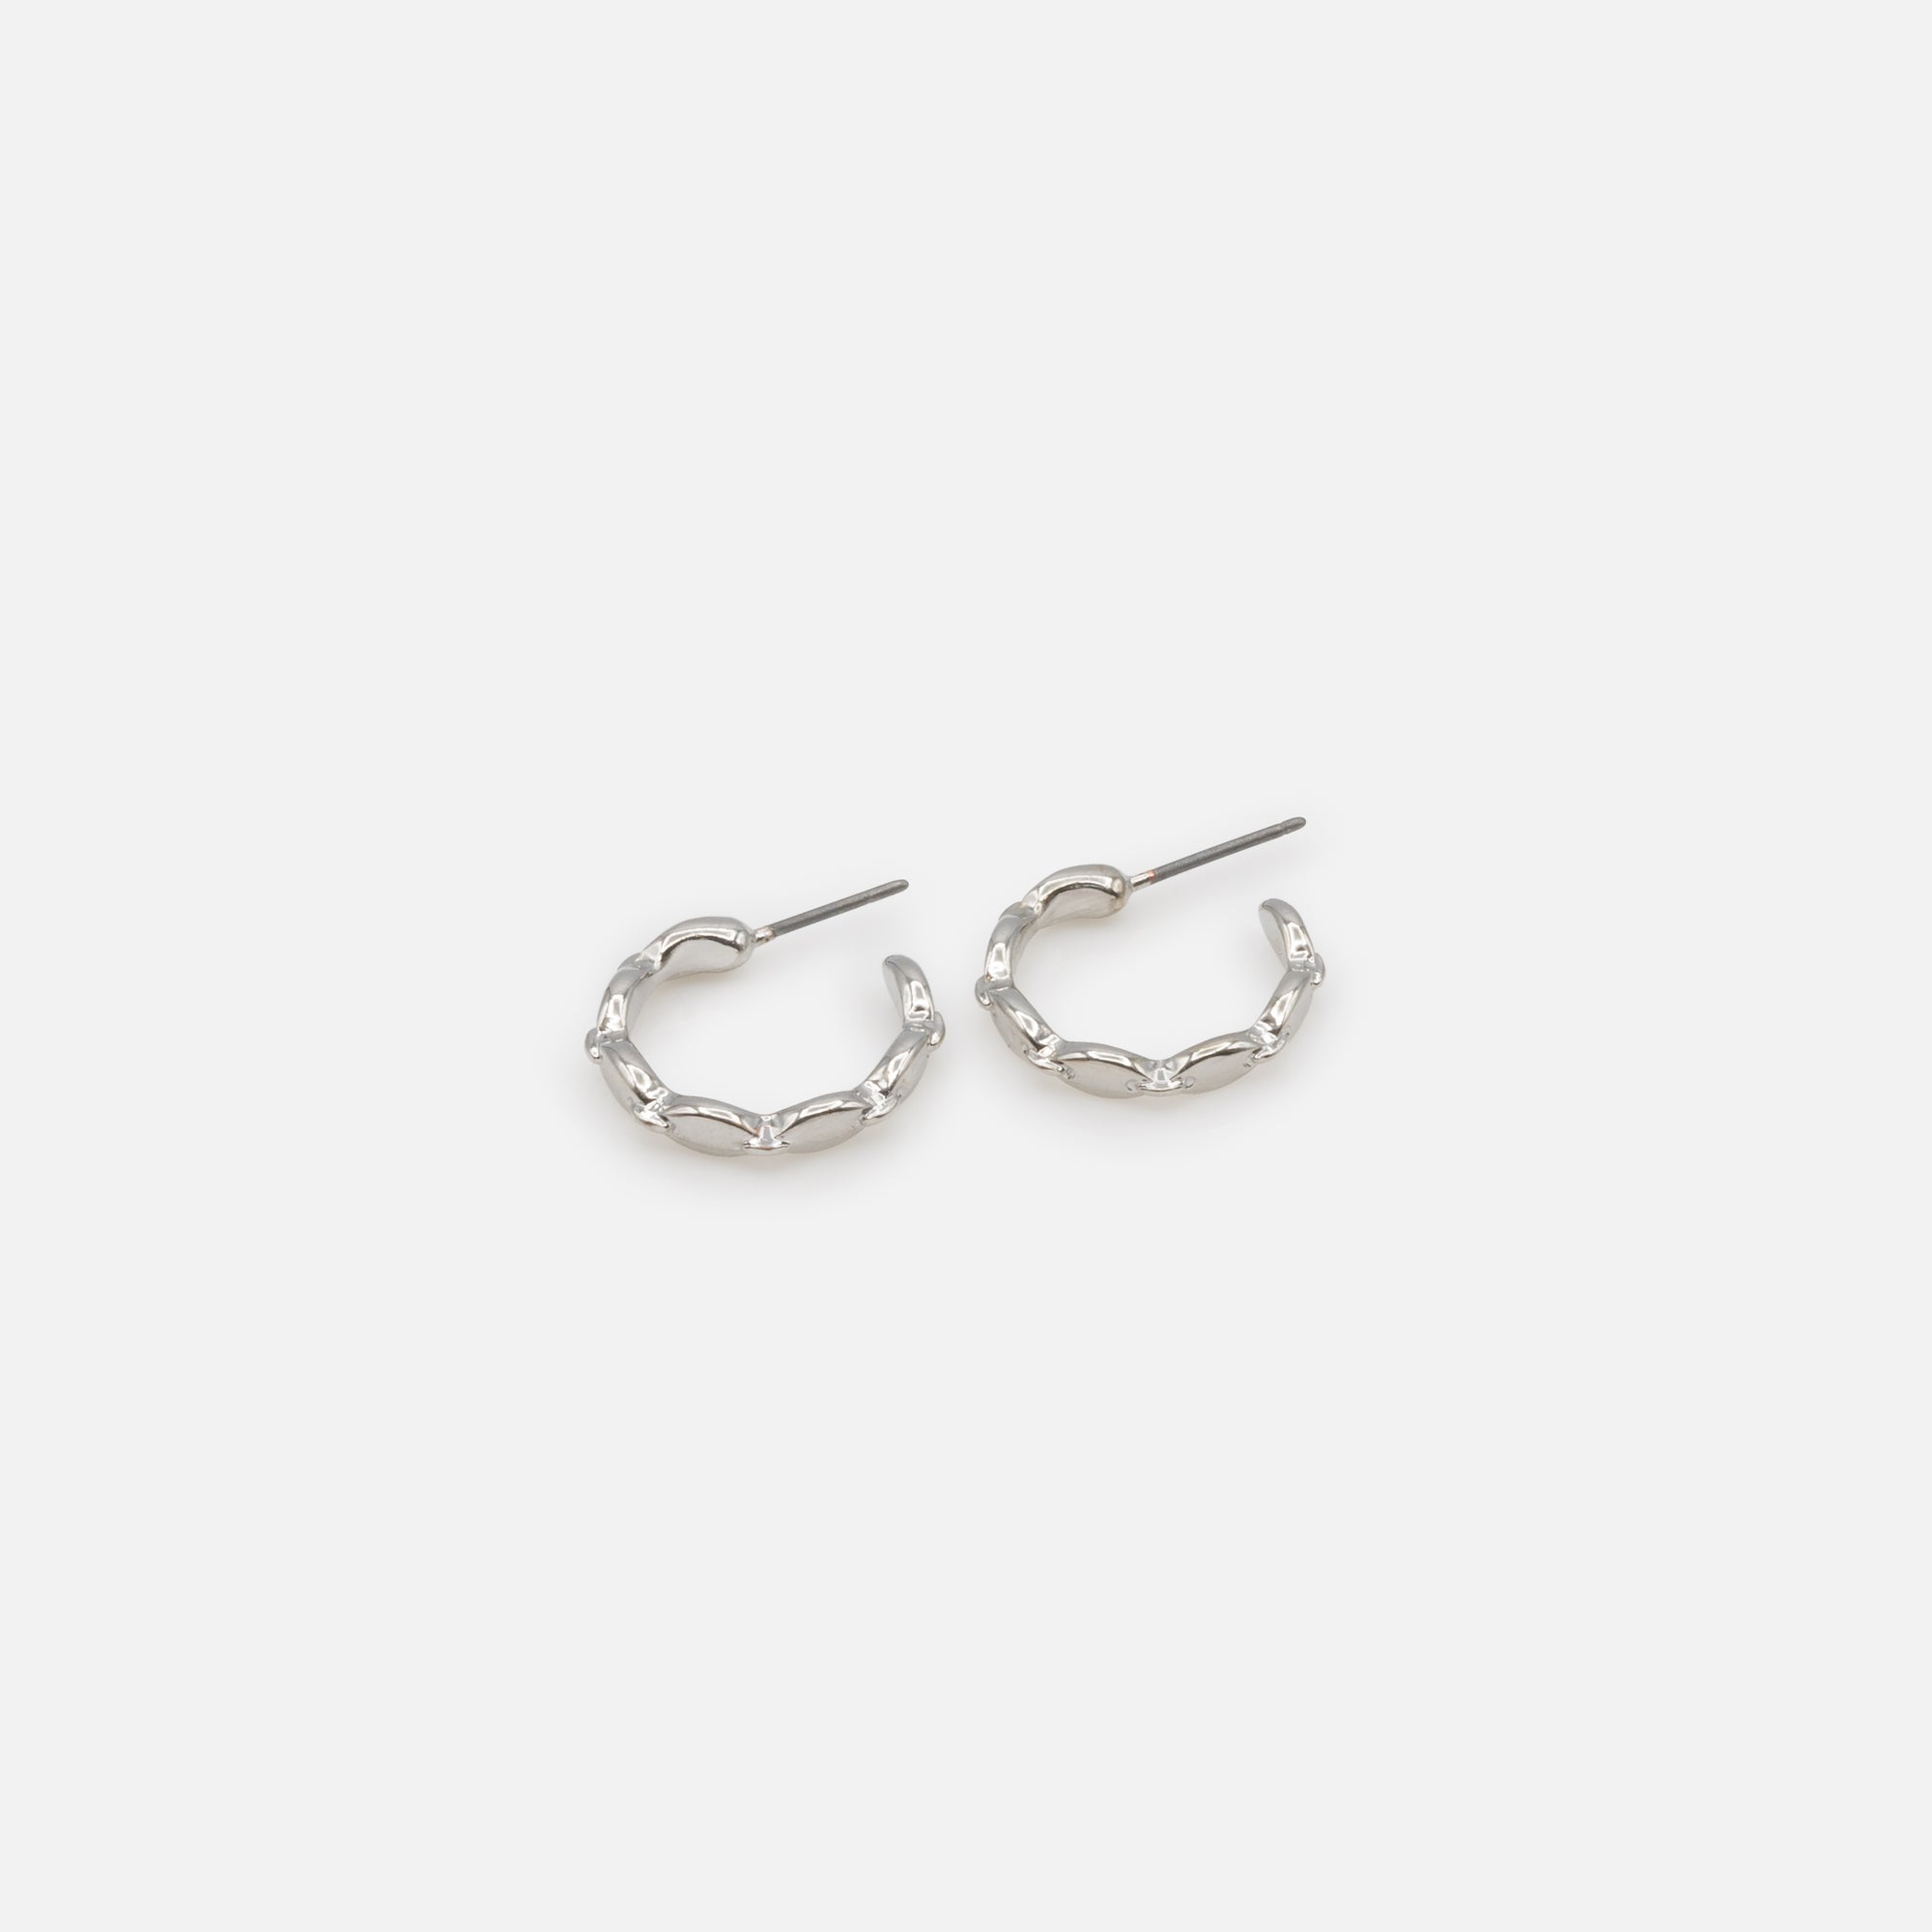 Duo of simple silver hoop and mesh earrings